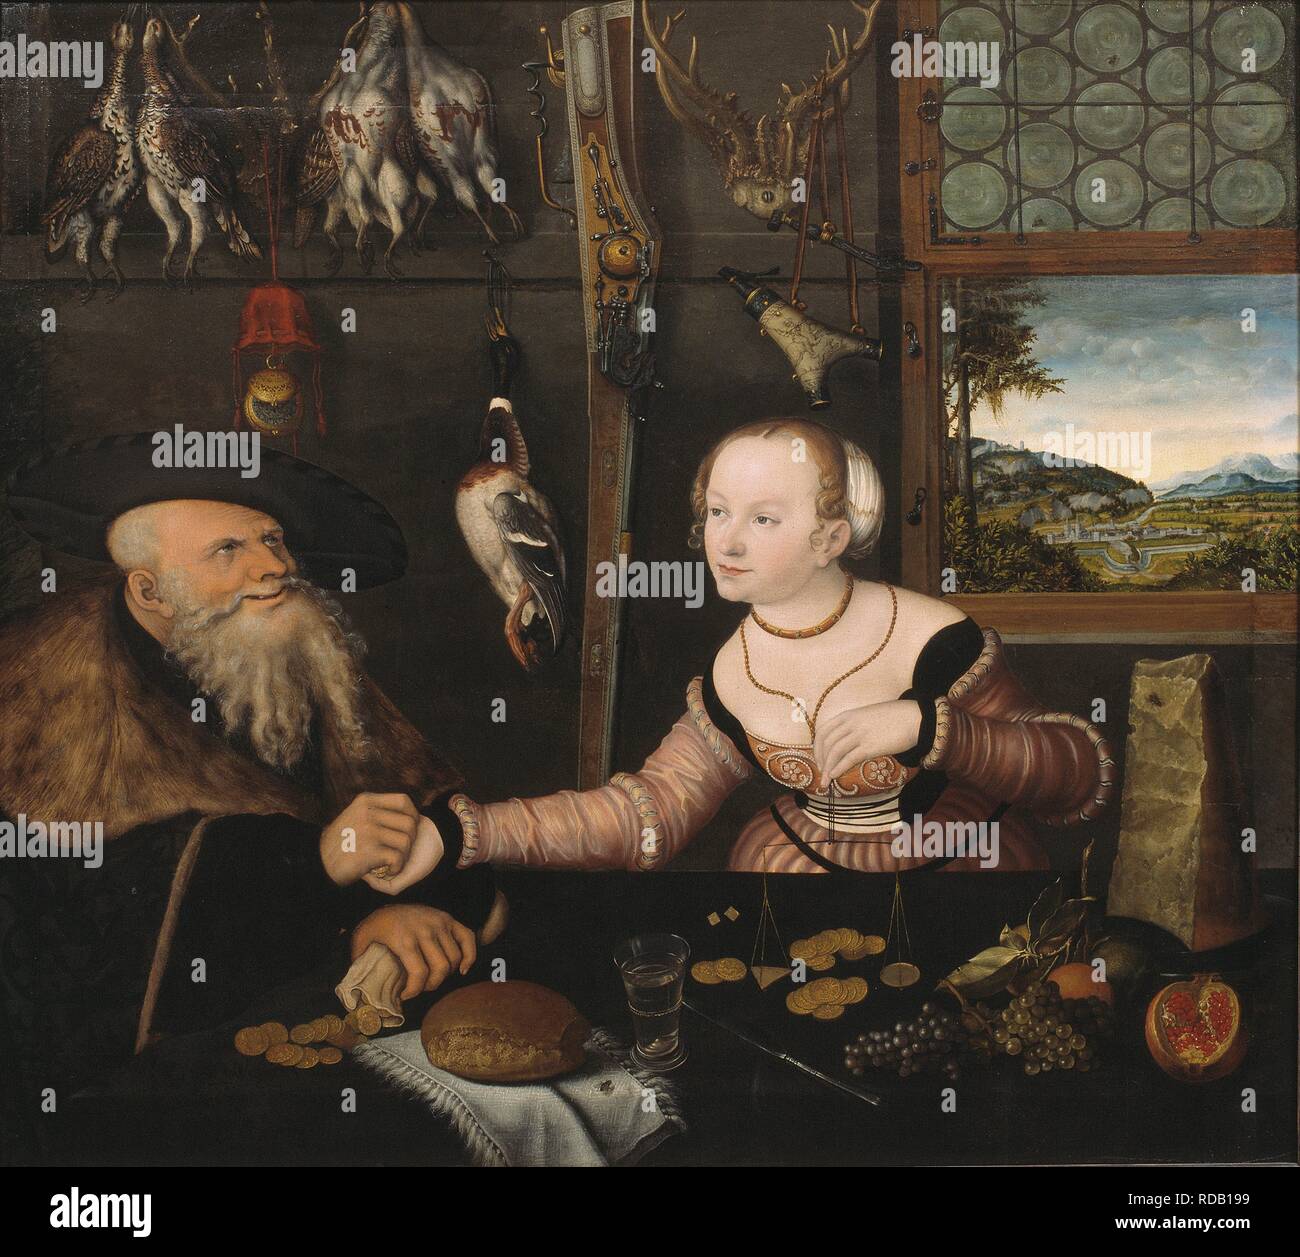 Los malos par coincidente. Museo: Nationalmuseum de Estocolmo. Autor: Cranach, Lucas, el anciano. Foto de stock